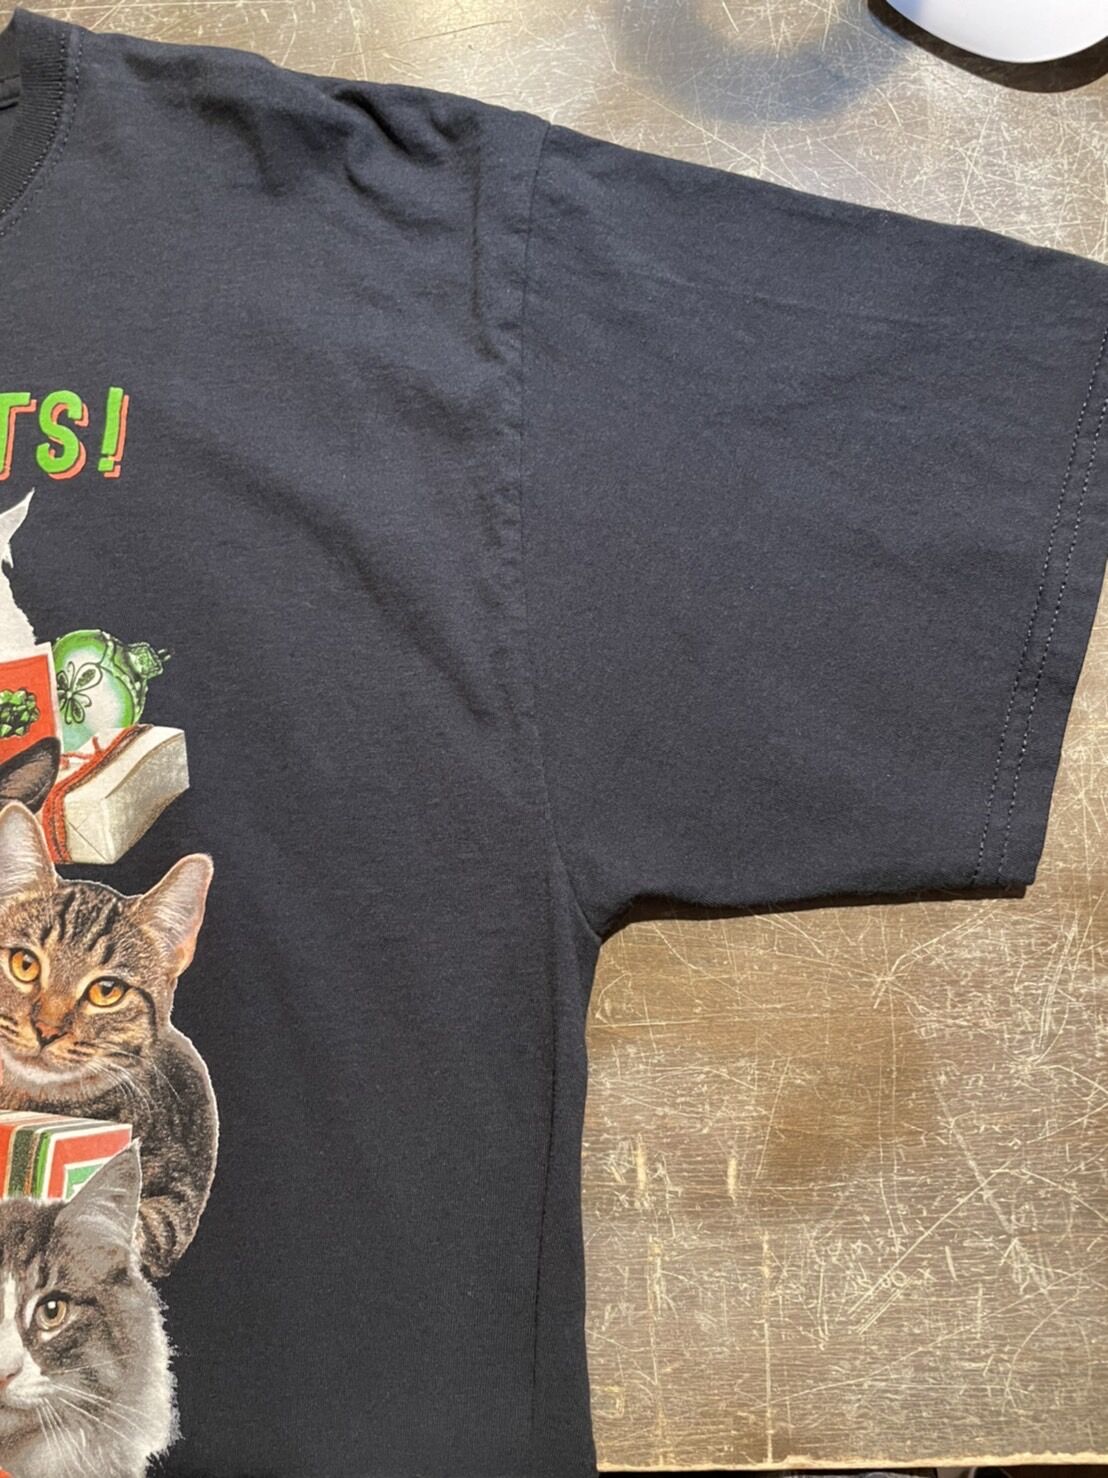 アニマルTシャツtシャツユニコーンキャット動物猫ANIMAL黒XLアートプリント